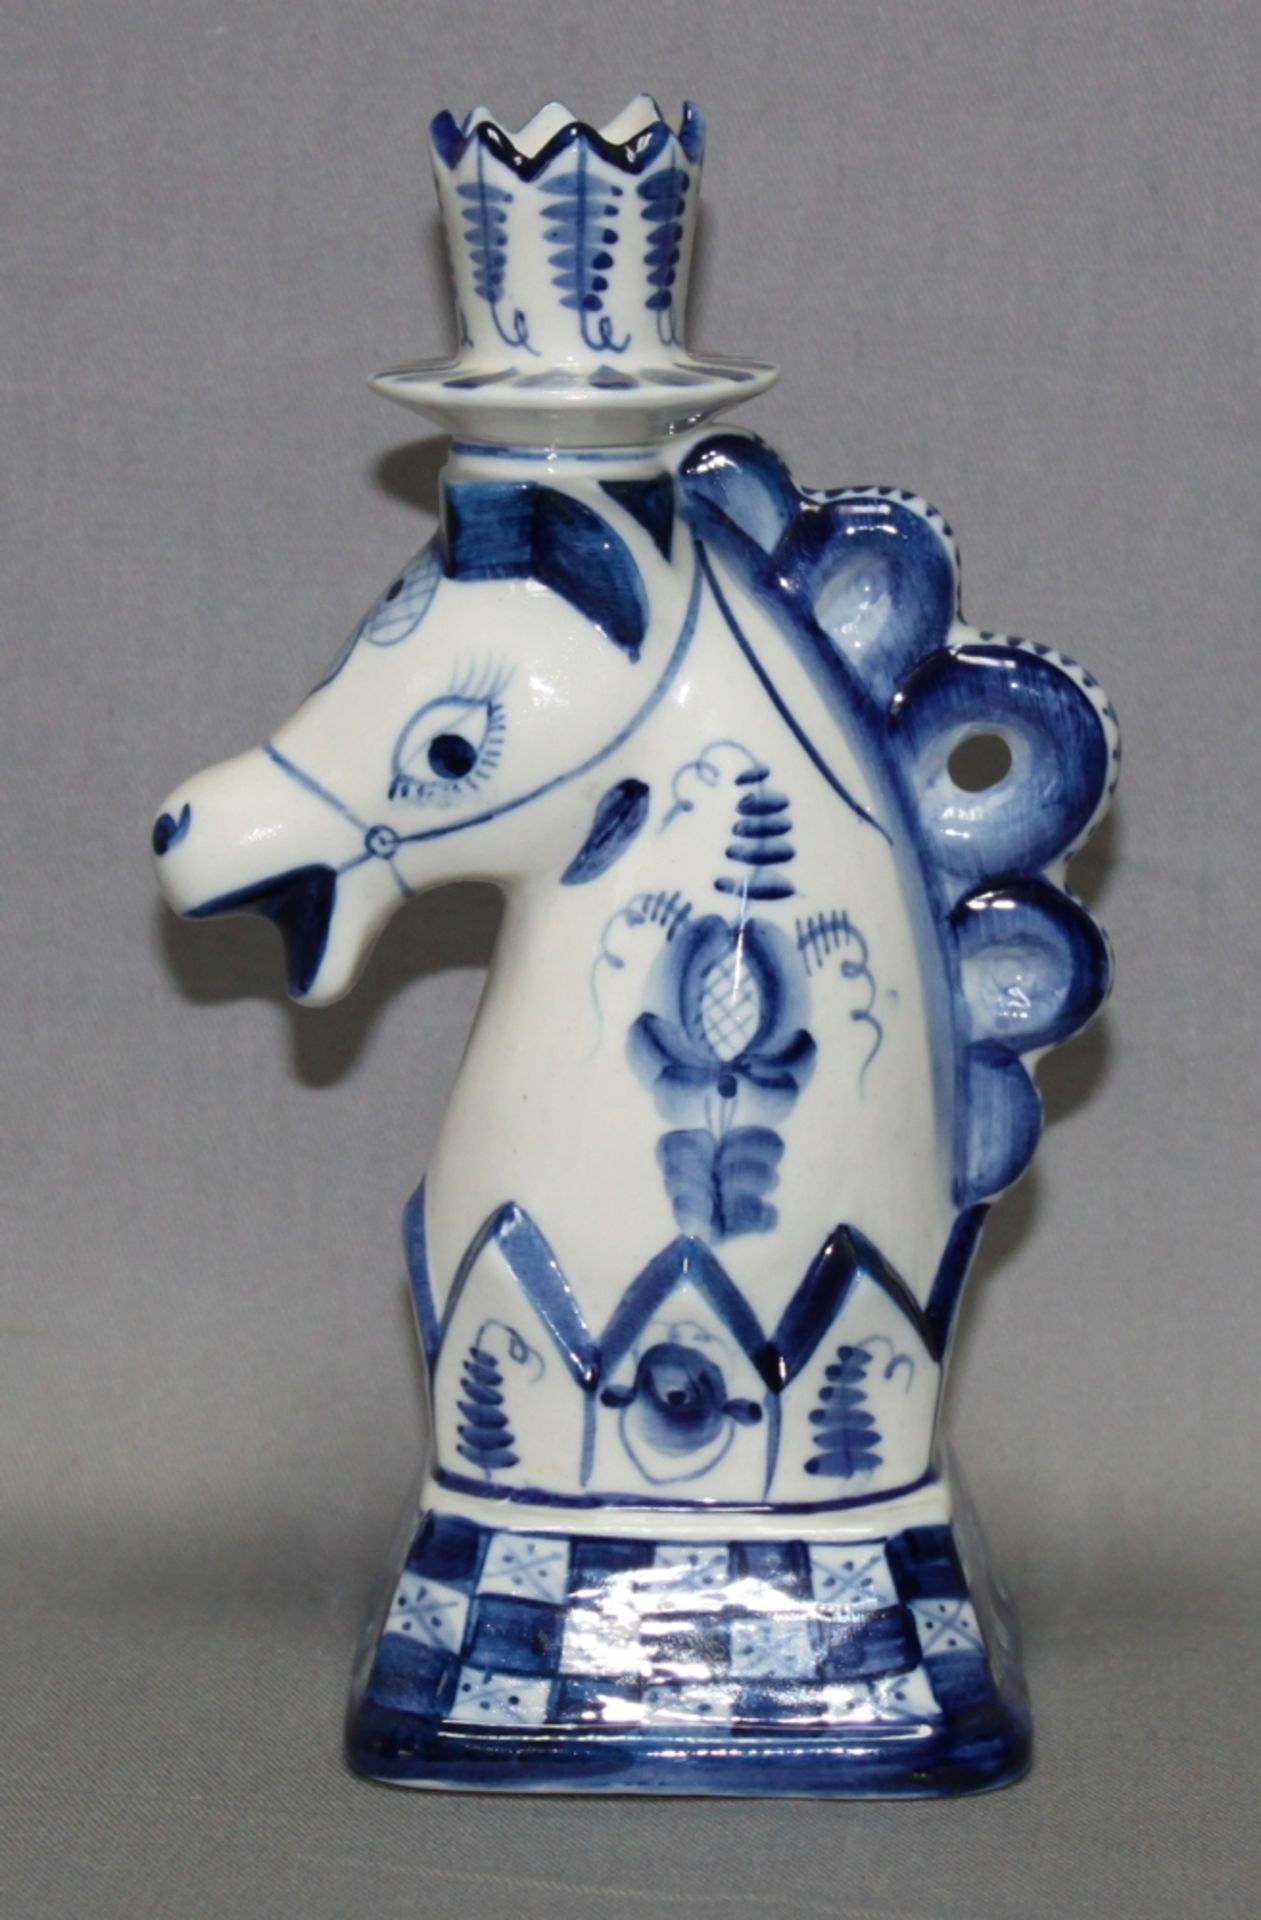 Schachfigur - Springer als Kerzenhalter aus Porzellan. Schachfigur in Blau und Weiß glasiert. Auf